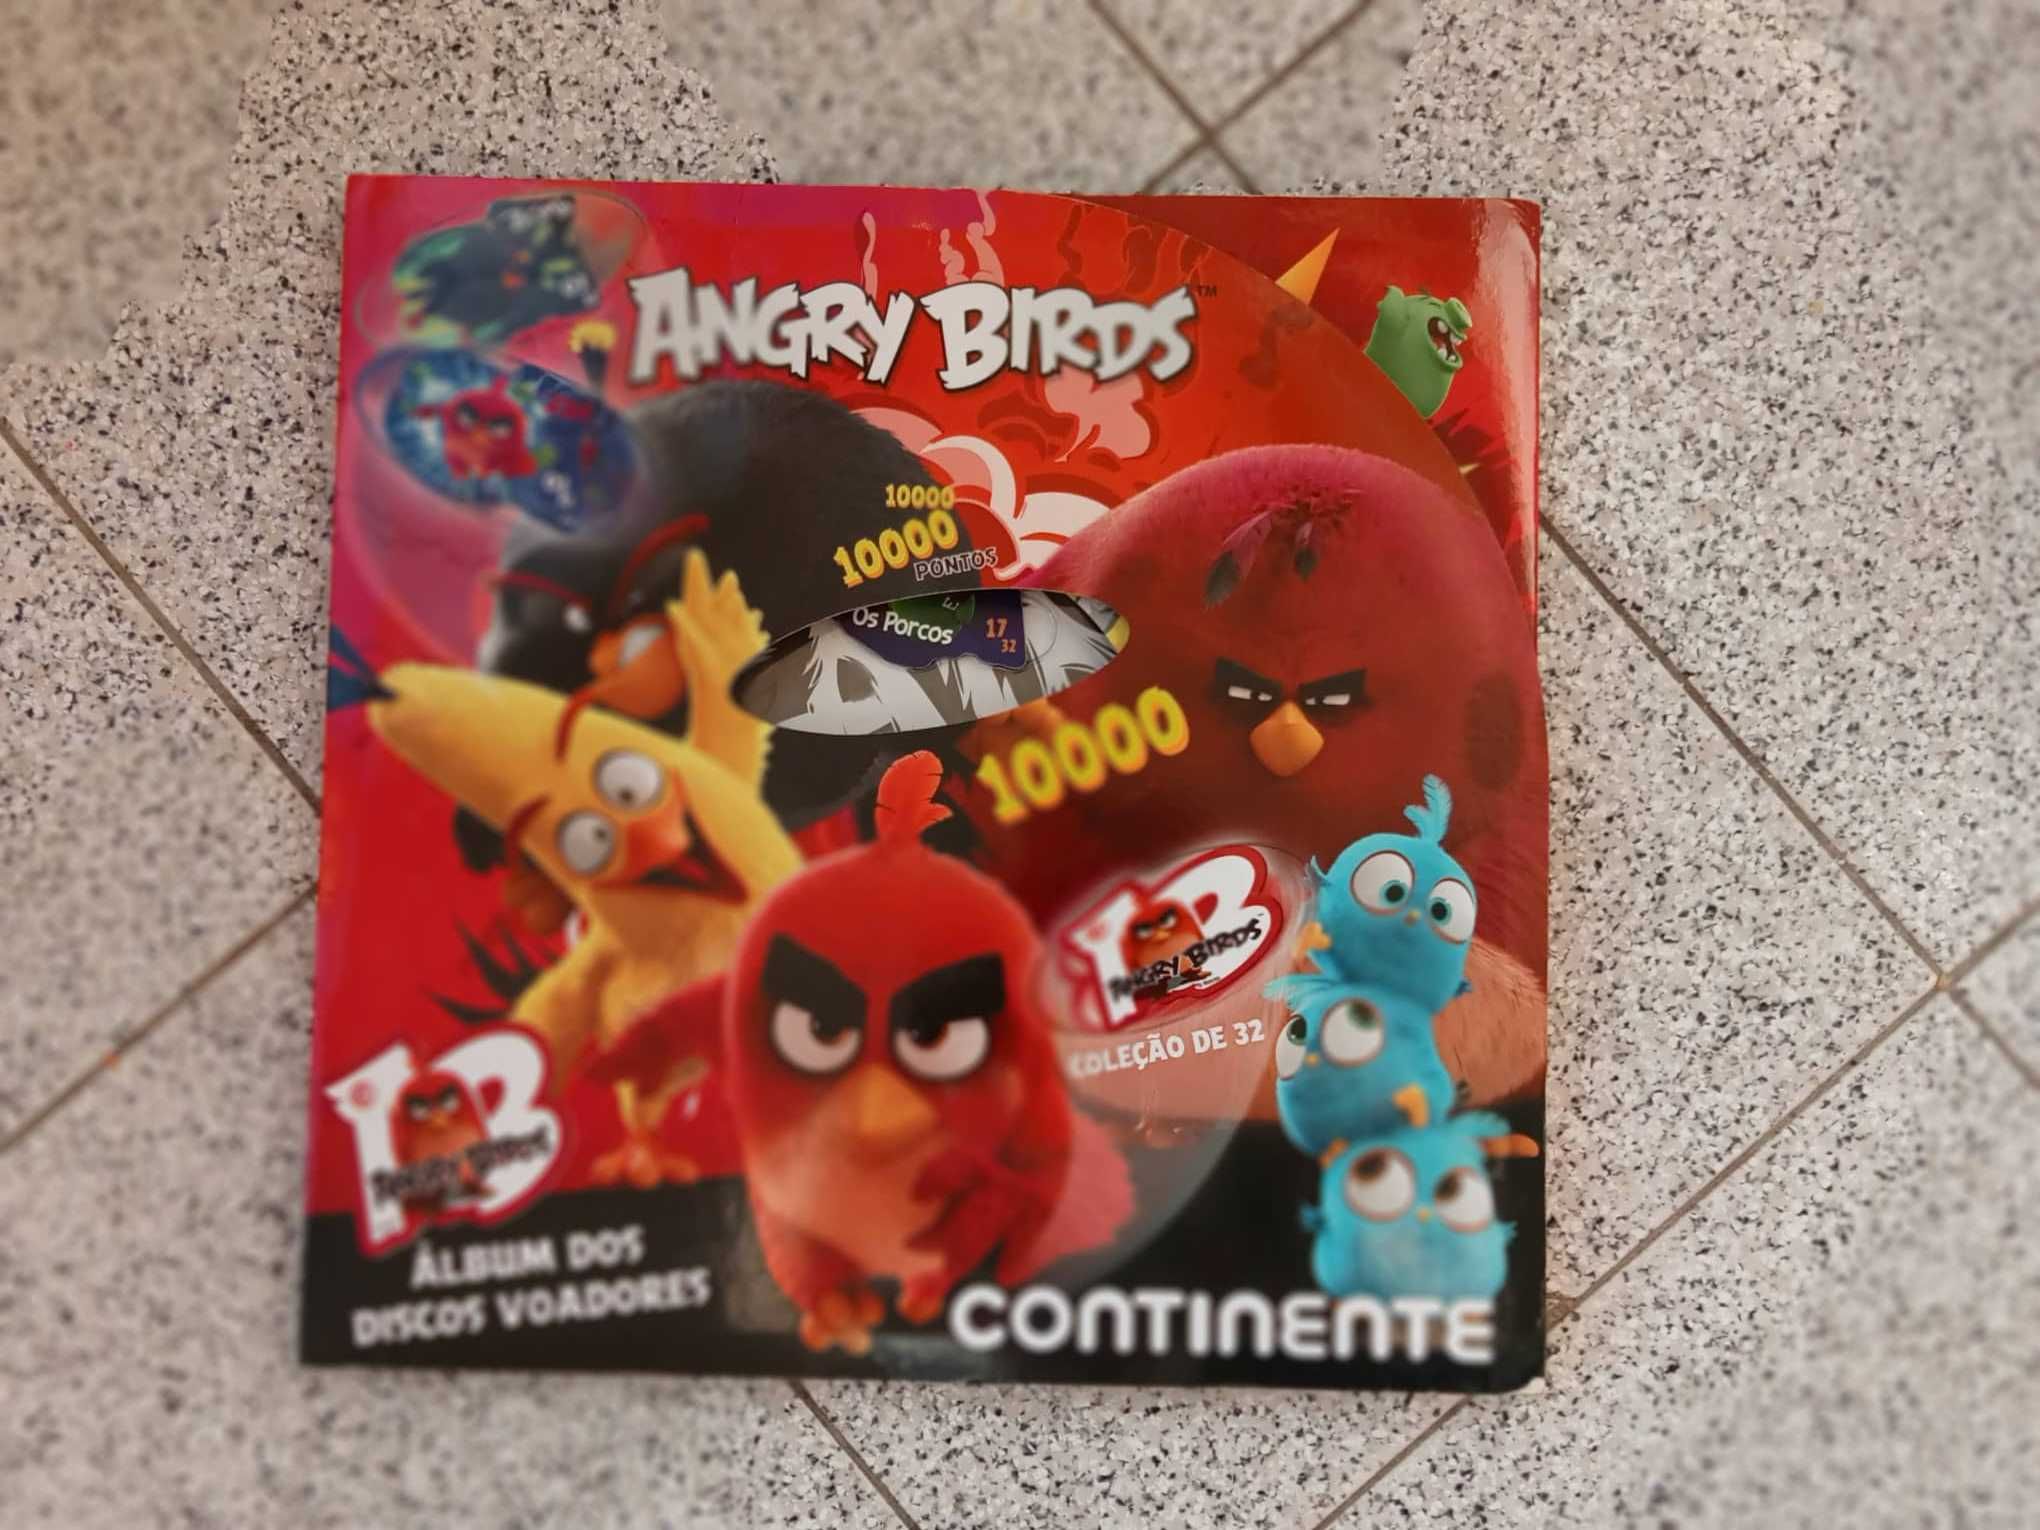 Coleção Caderneta Angry Birds - Discos Voadores Completa